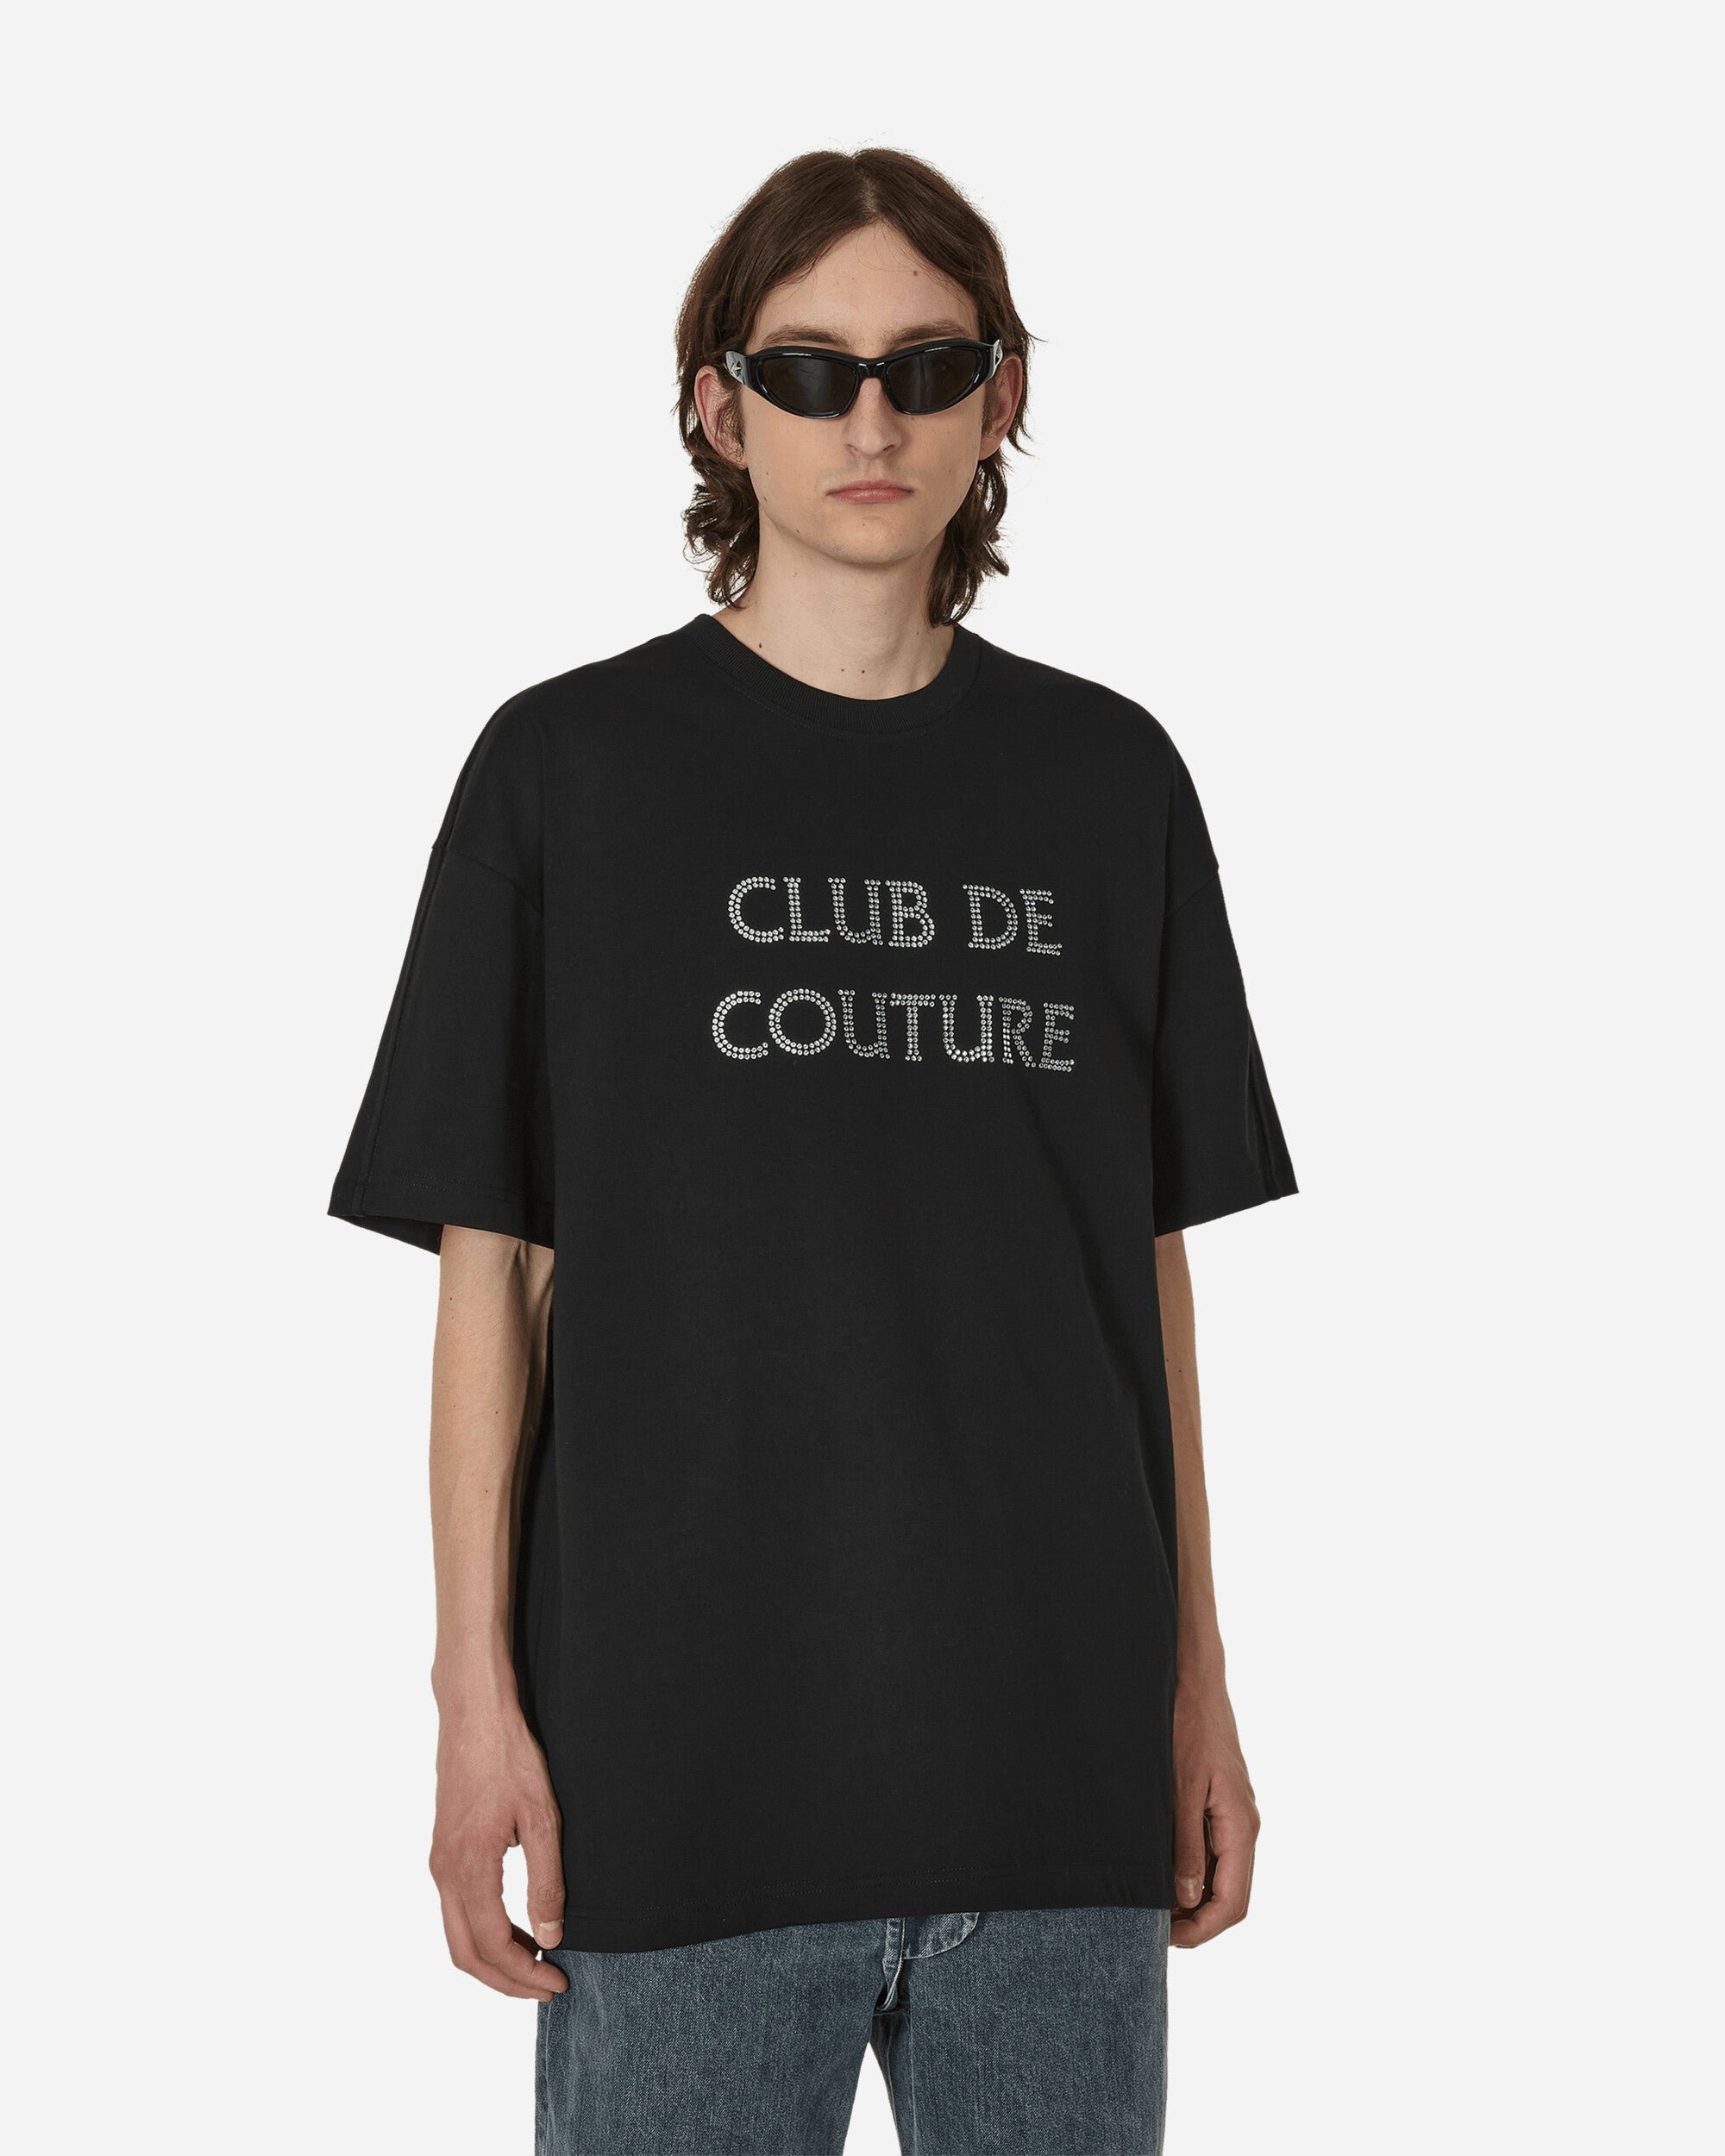 ANONYMOUS CLUB CLUB DE COUTURE Tシャツ | hartwellspremium.com